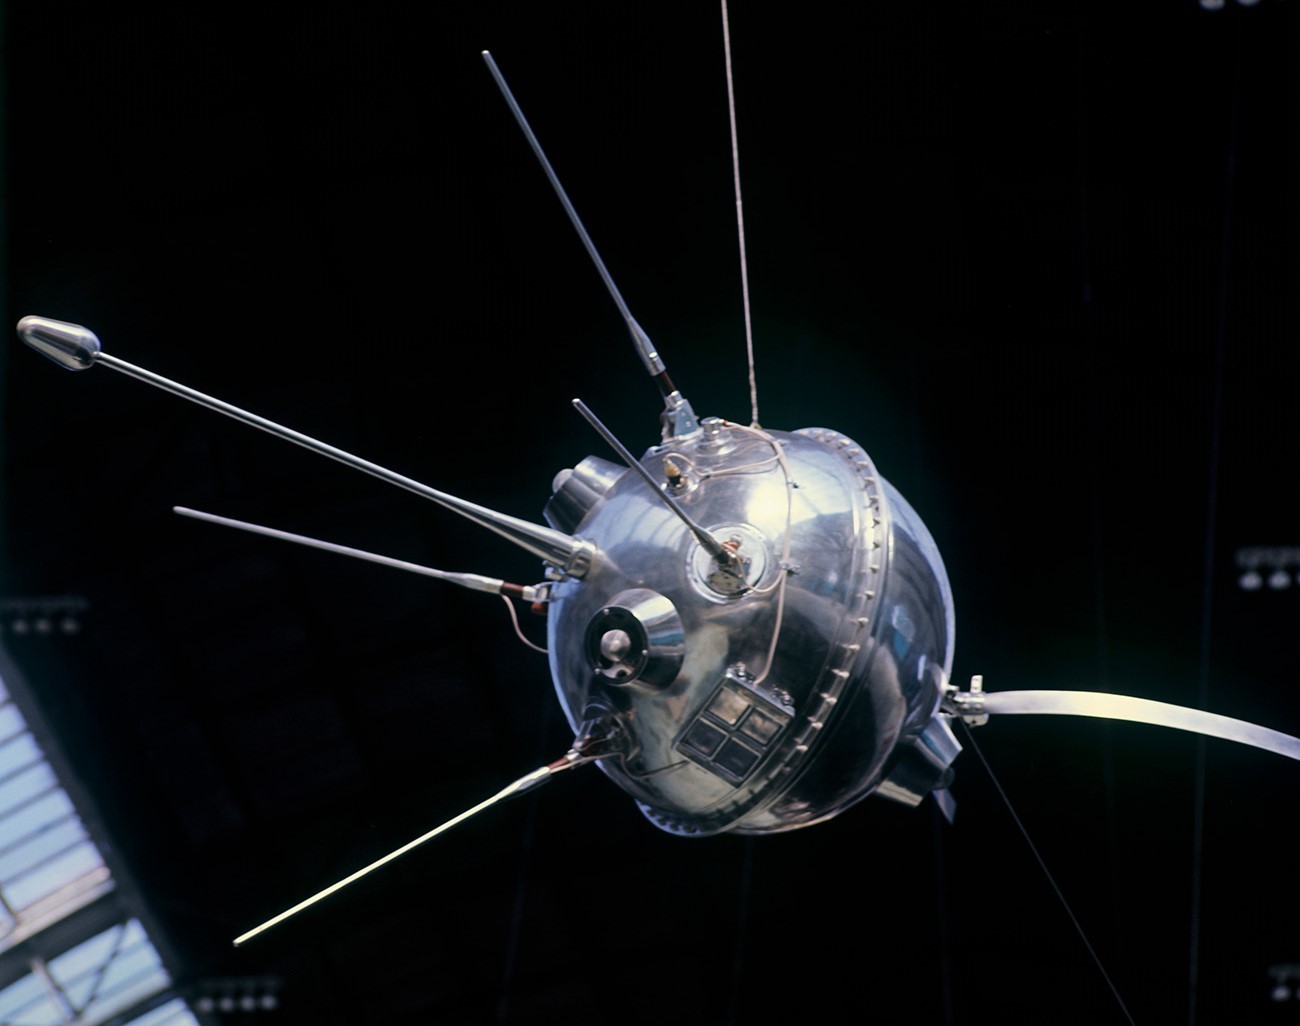 Међупланетарна станица „Луна 1“ у павиљону „Космос“ изложбеног комплекса ВДНХ.